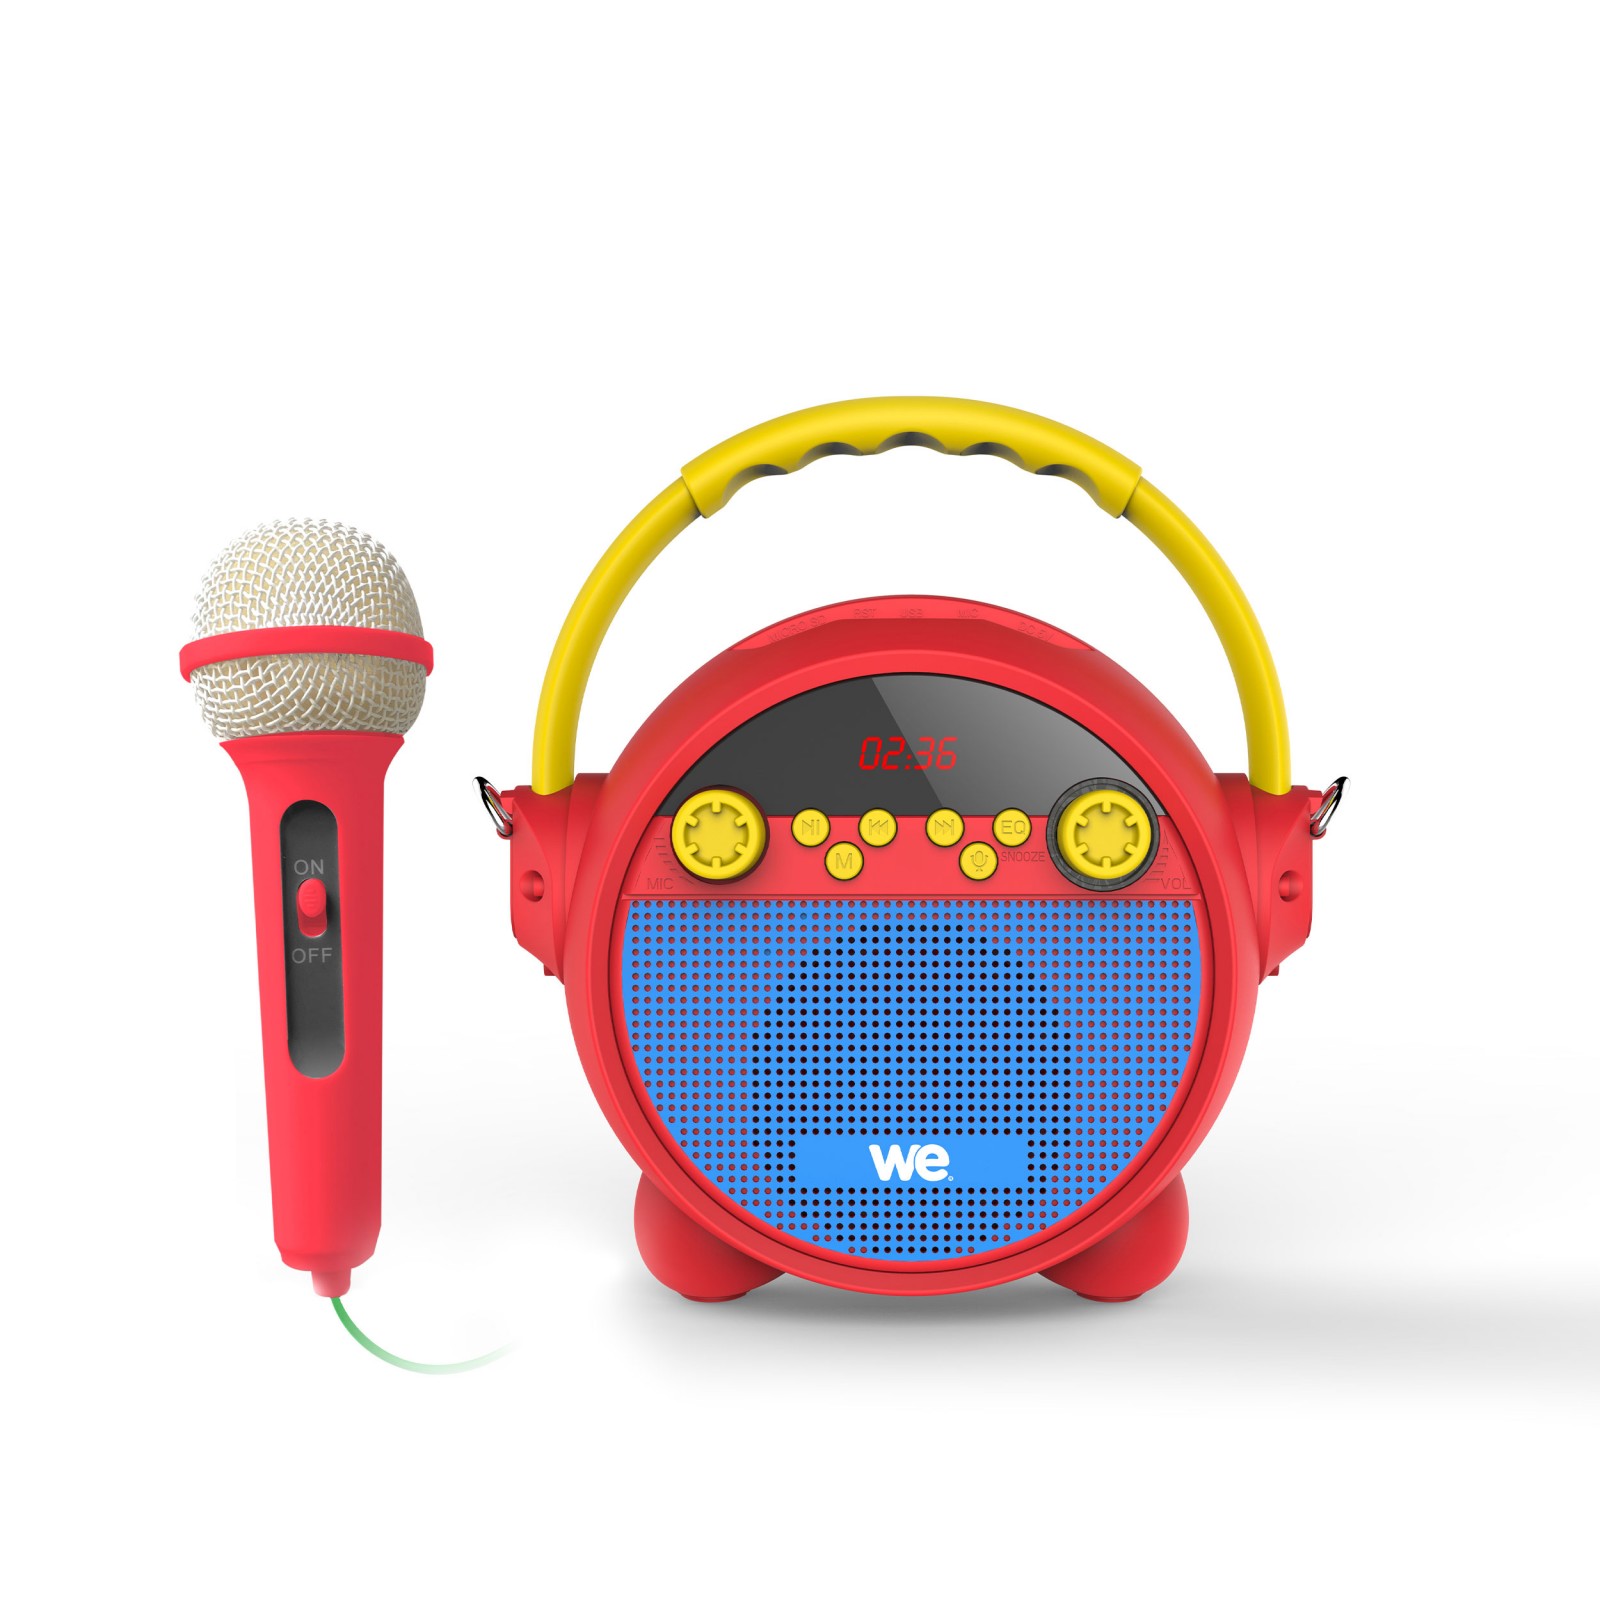 Radio réveil karaoké avec micro RMS 5w, BT, Lecteur USB Micro SD Radio FM,  batterie rechargeable bandoulière inclus - WE